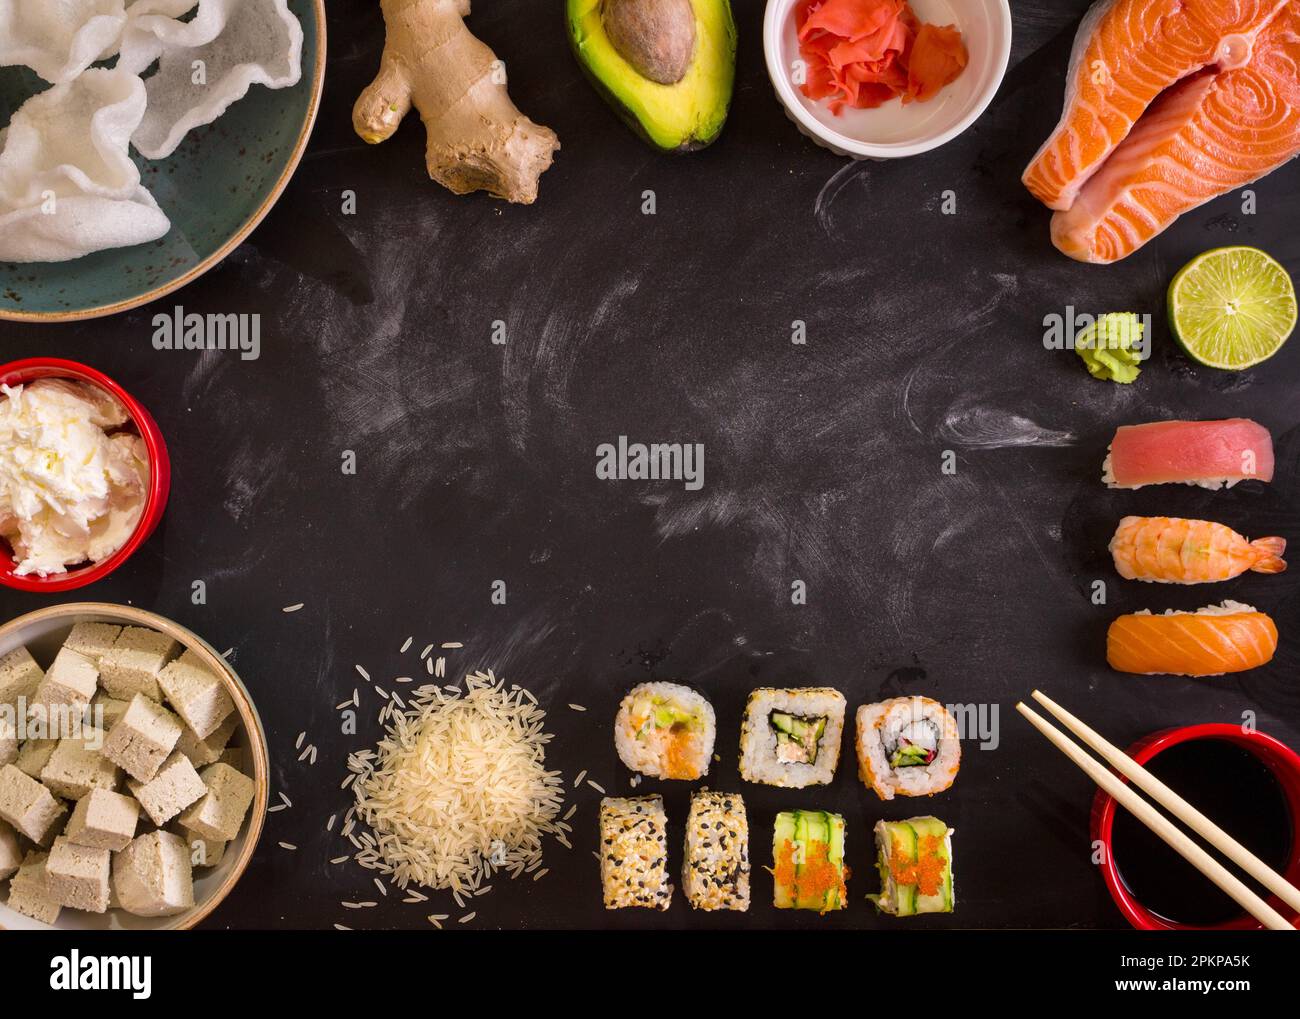 Aufnahme von Sushi und Zutaten über Kopf auf dunklem Hintergrund. Sushi Brötchen, Nigiri, rohes Lachssteak, Reis, Frischkäse, Avocado, Limette, eingelegter Ingwer (g Stockfoto